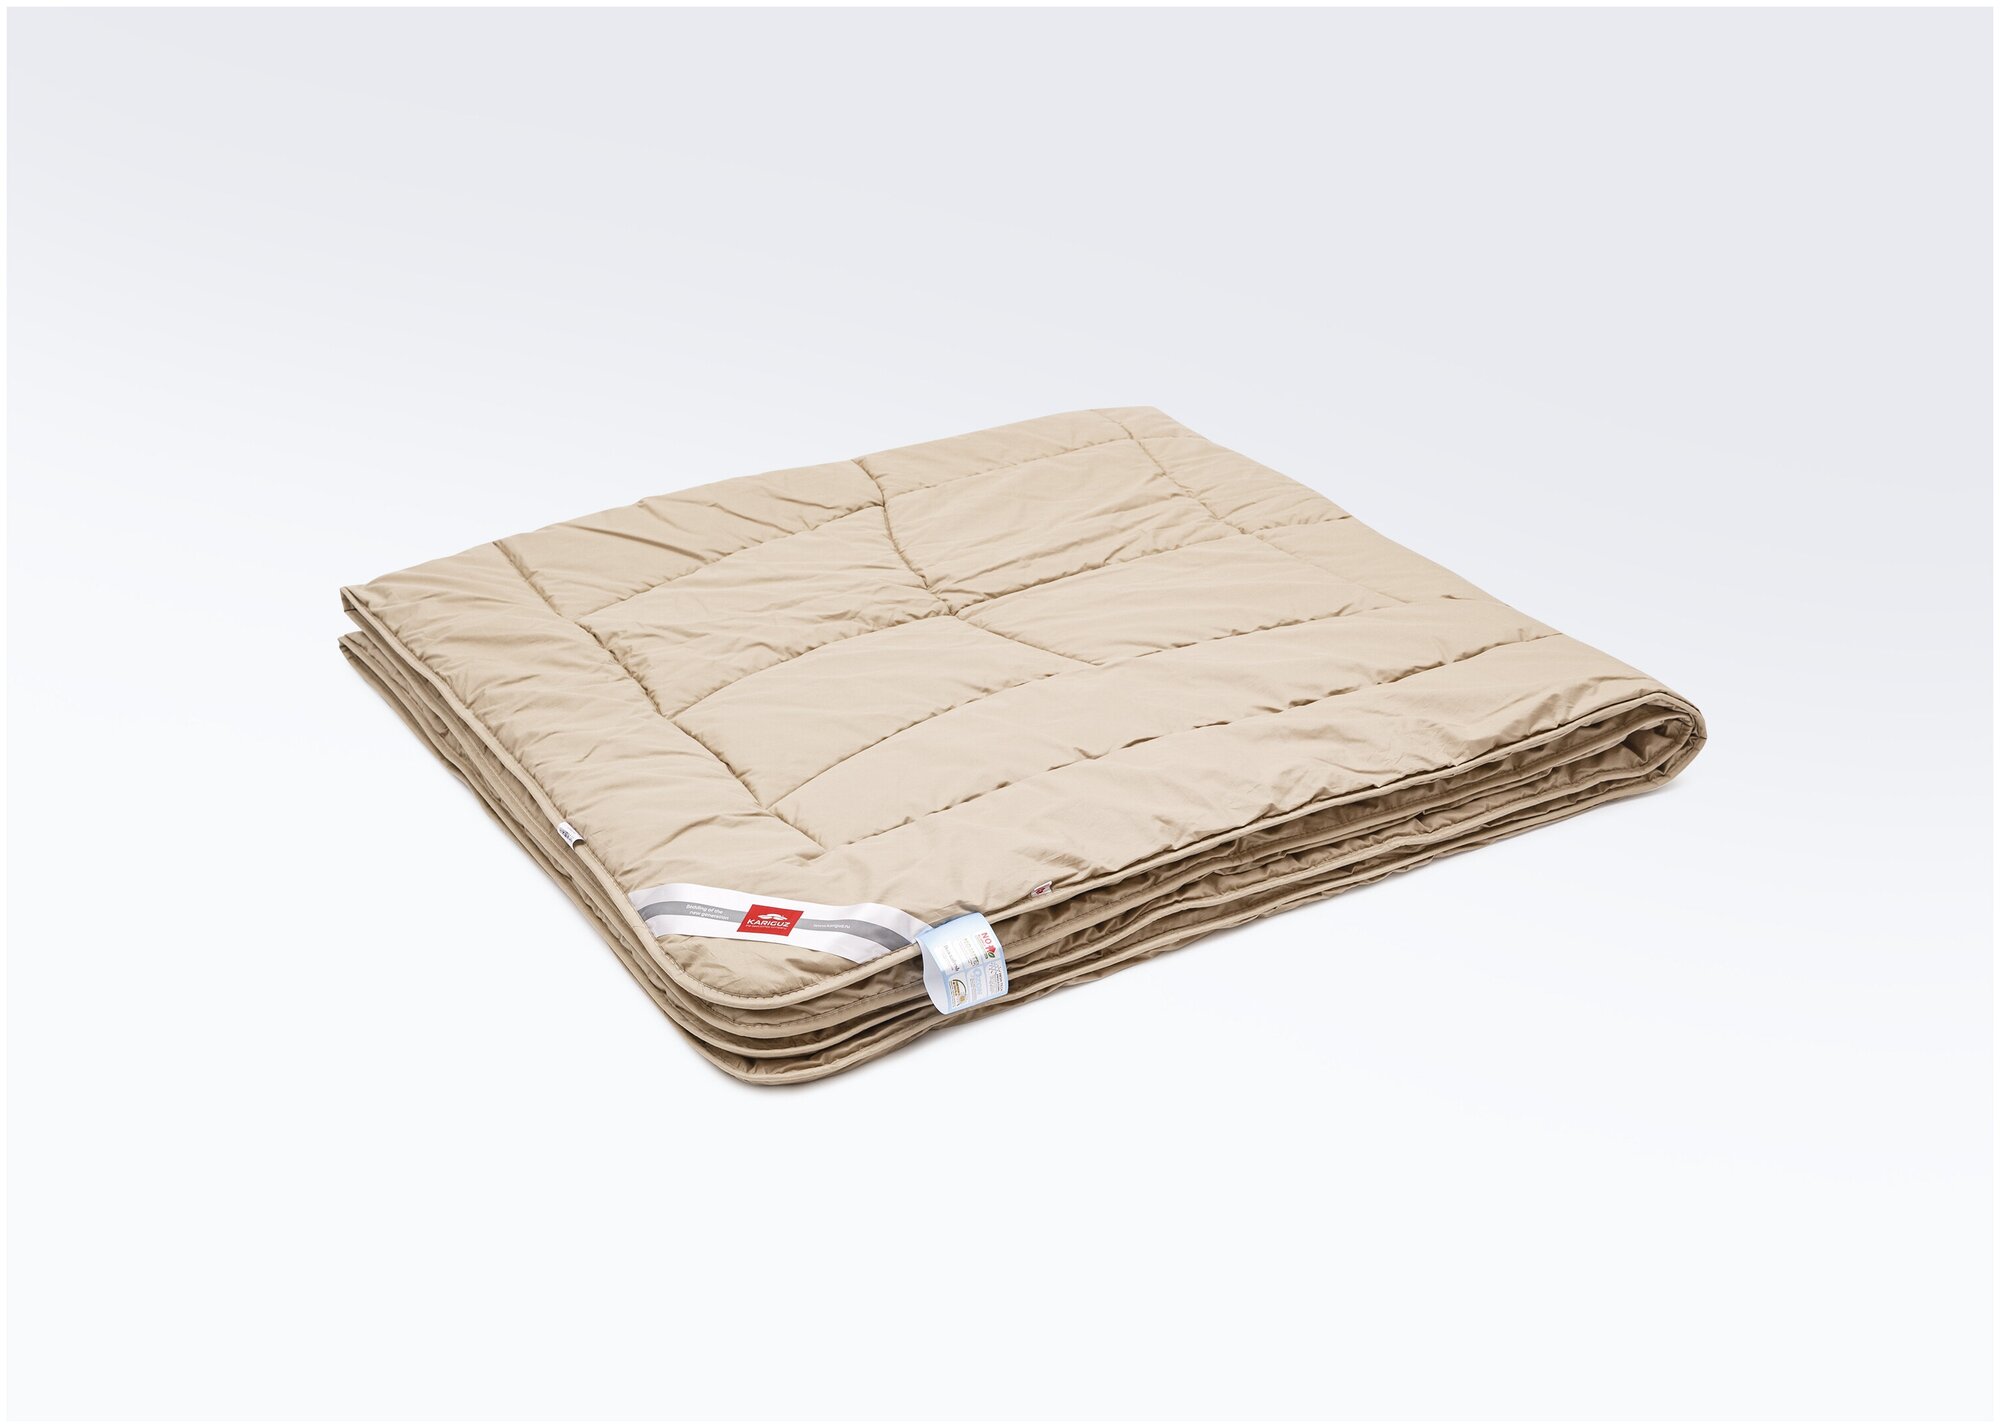 Тёплое одеяло Kariguz Pure Camel, 200х220, шерстяное натуральное одеяло, всесезонное тёплое - фотография № 1